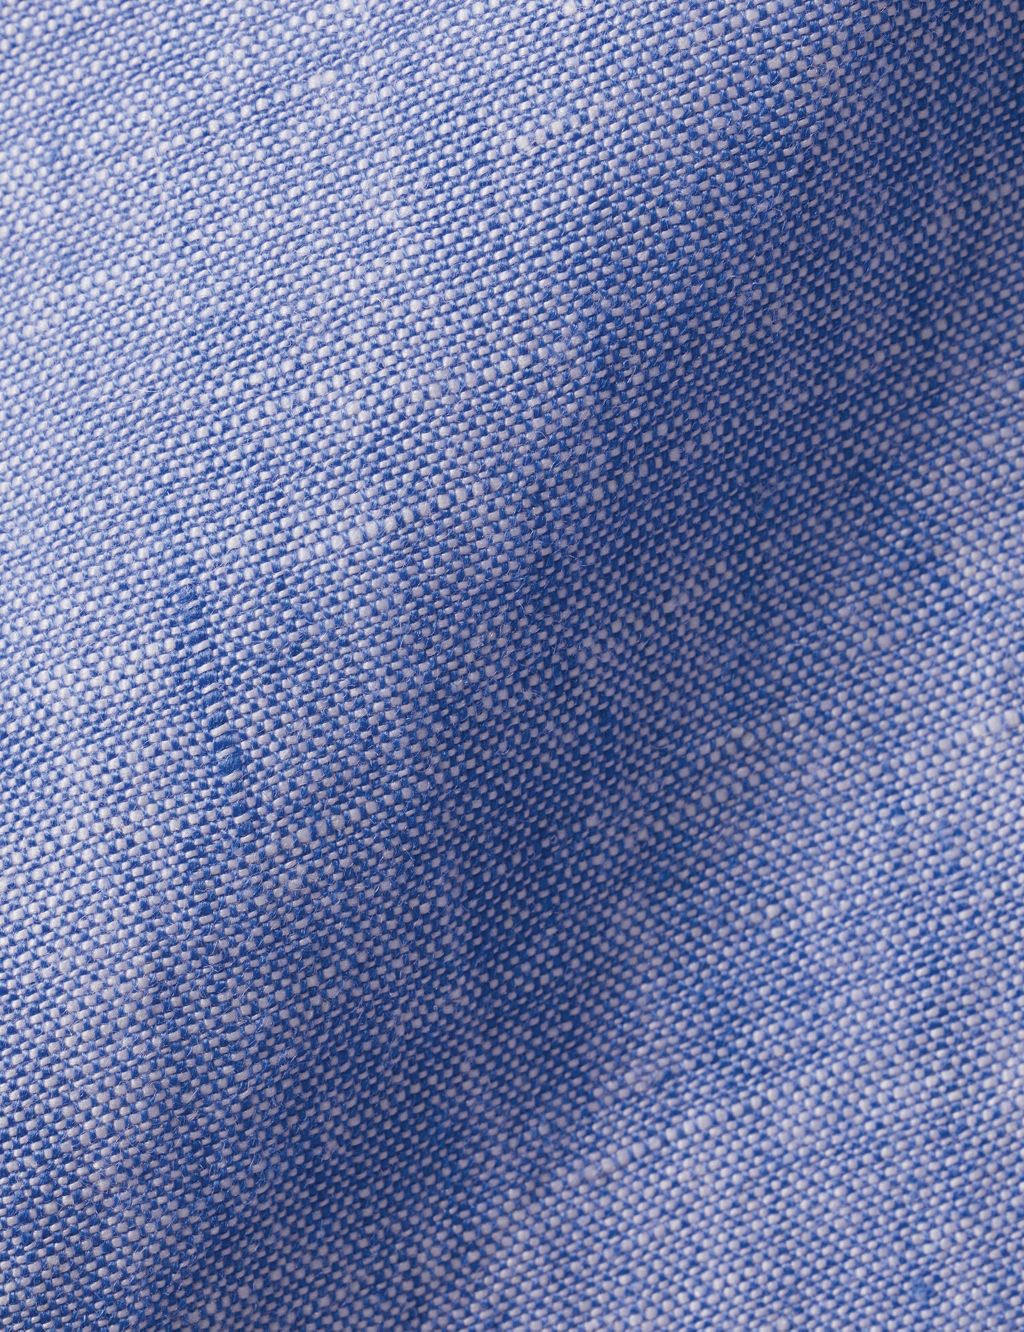 Slim Fit Pure Linen Shirt image 3